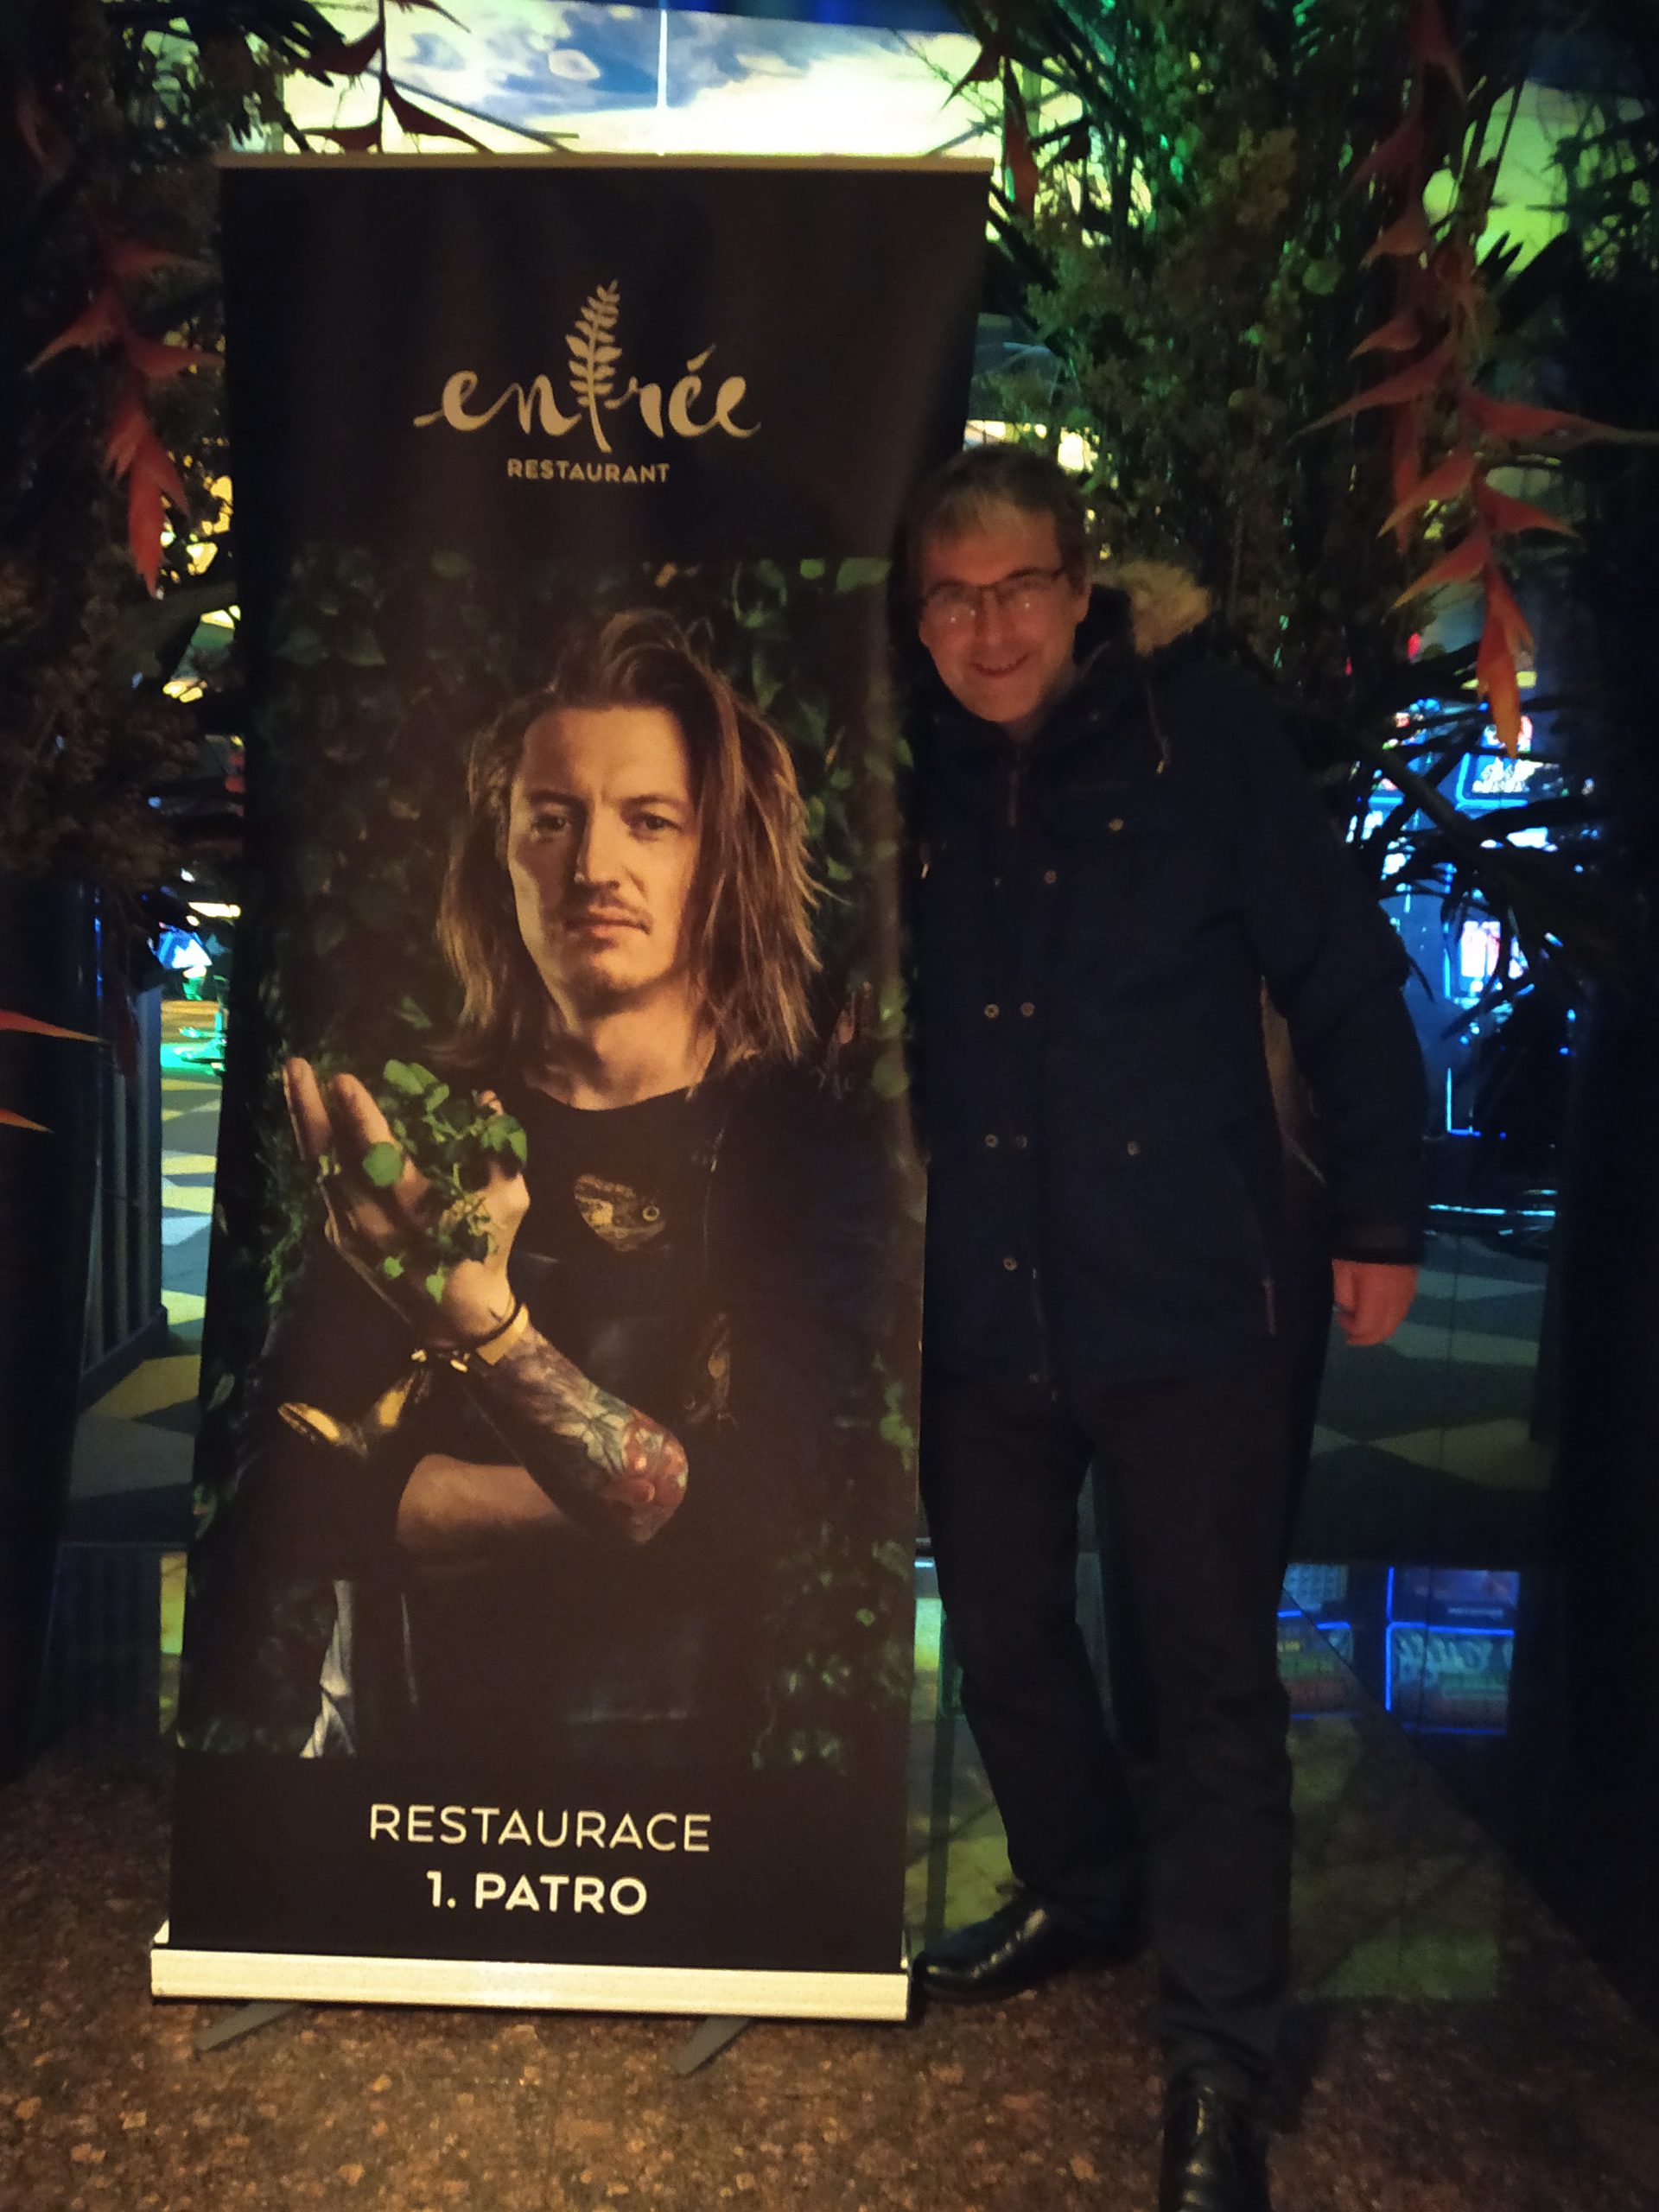 Humpolák navštívil restauraci Entrée Přemka Forejta v Olomouci